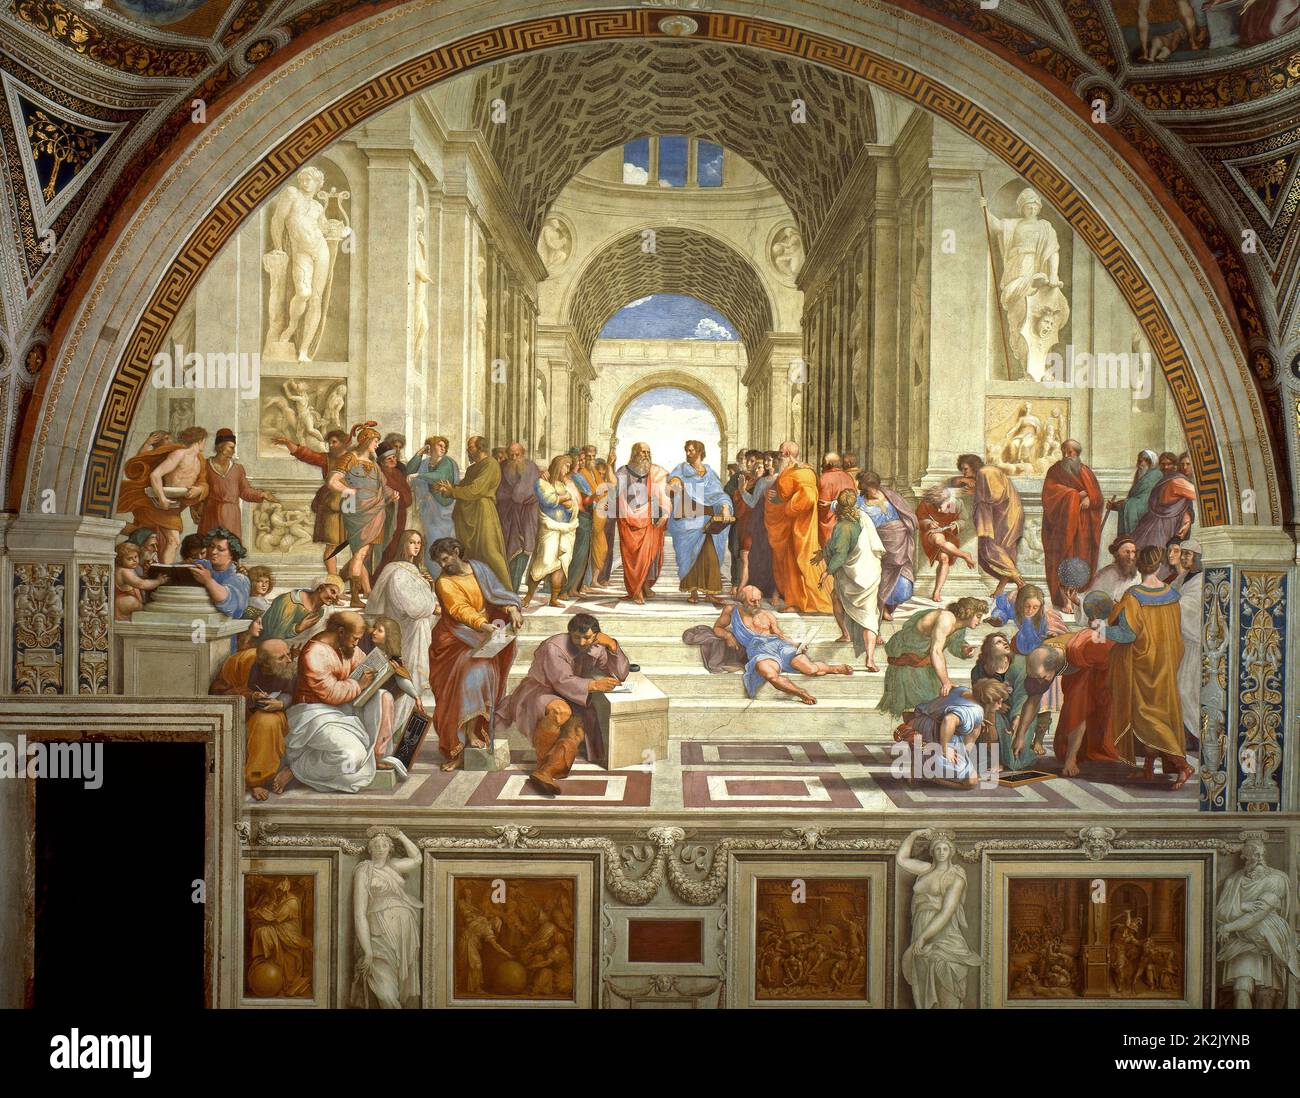 Rafael Sanzio da Urbino (6 aprile o 28 marzo 1483 -> 6 aprile 1520), la Scuola di Atene, o Scuola di Atene in italiano, è uno dei dipinti più famosi dell'artista rinascimentale italiano Raffaello. Fu dipinto tra il 1510 e il 1511 come parte della commissione di Raffaello per decorare con affreschi le sale oggi note come le Stanze di Rafael, nel Palazzo Apostolico in Vaticano. Foto Stock